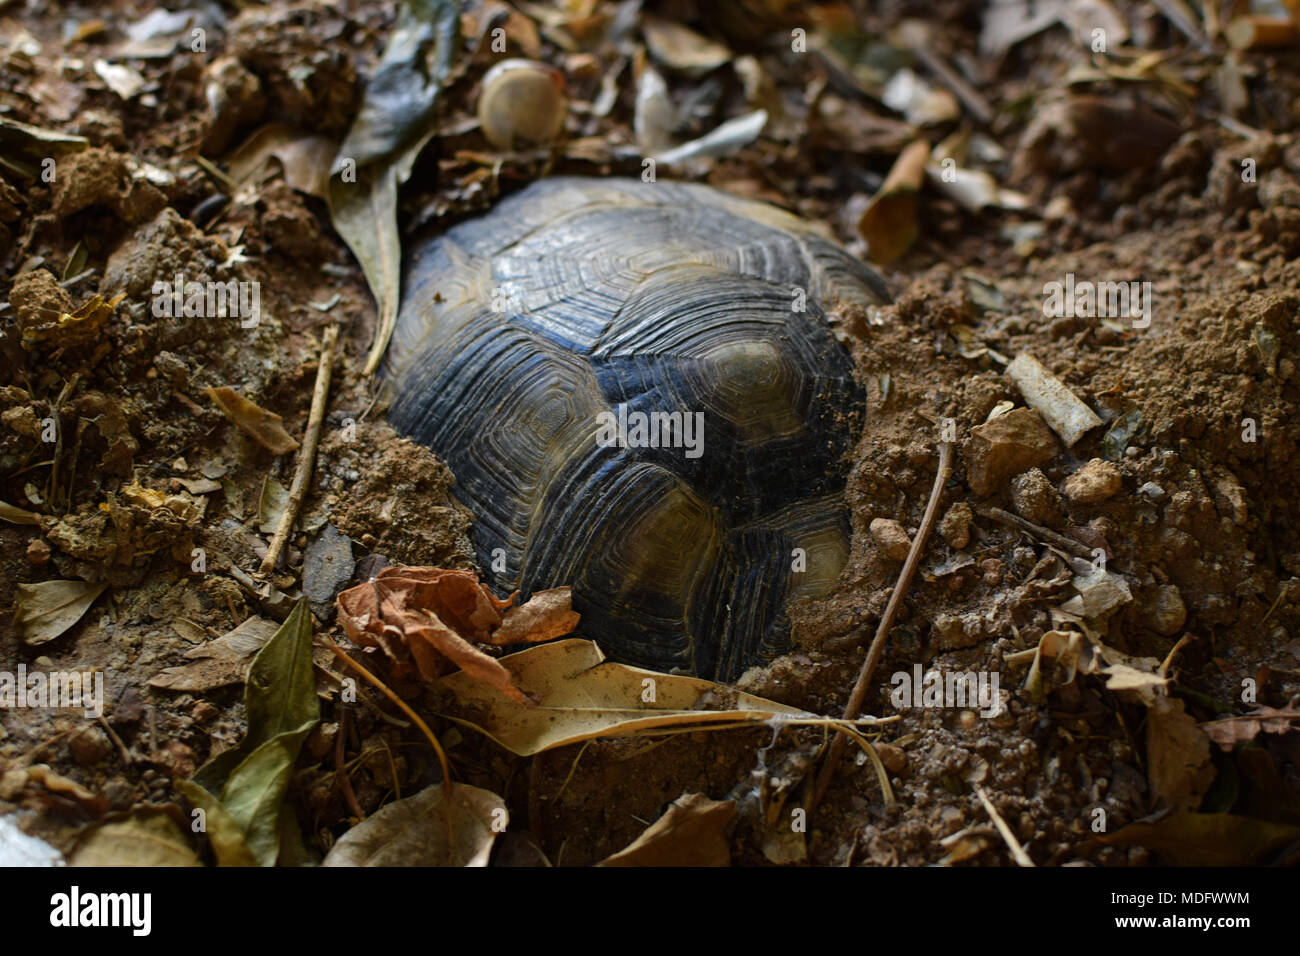 Turtle Winterschlaf unter der Erde an einem kalten Wintertag. Selektive konzentrieren. Stockfoto